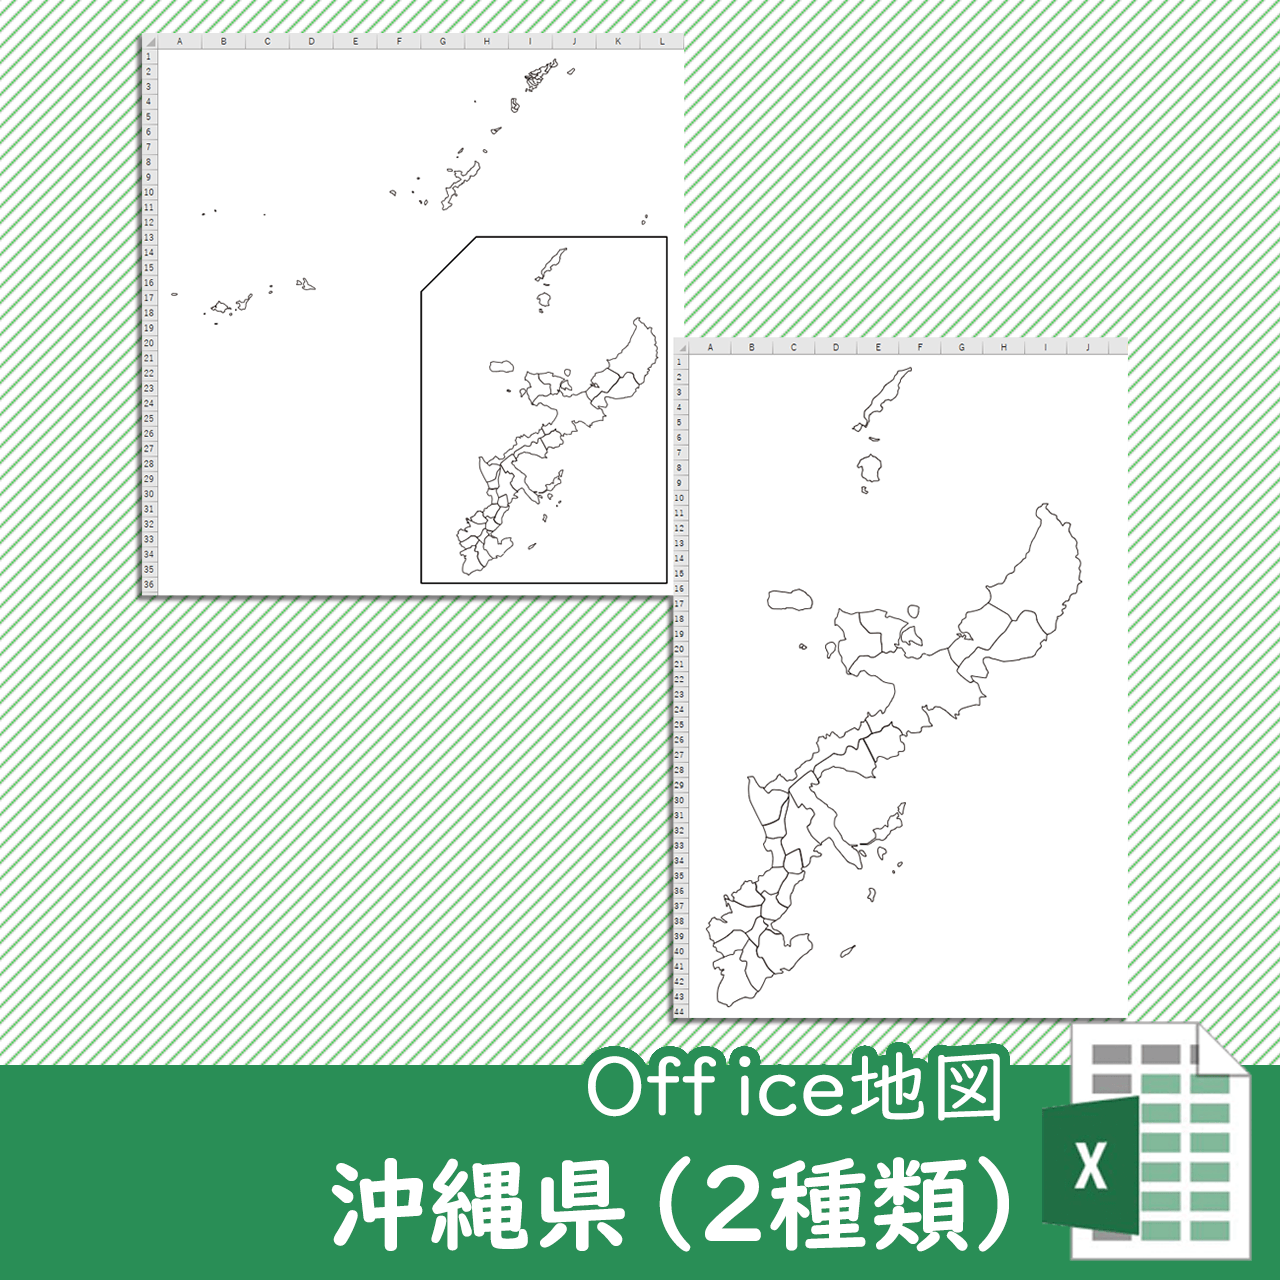 沖縄県本島周辺図のOffice地図のサムネイル